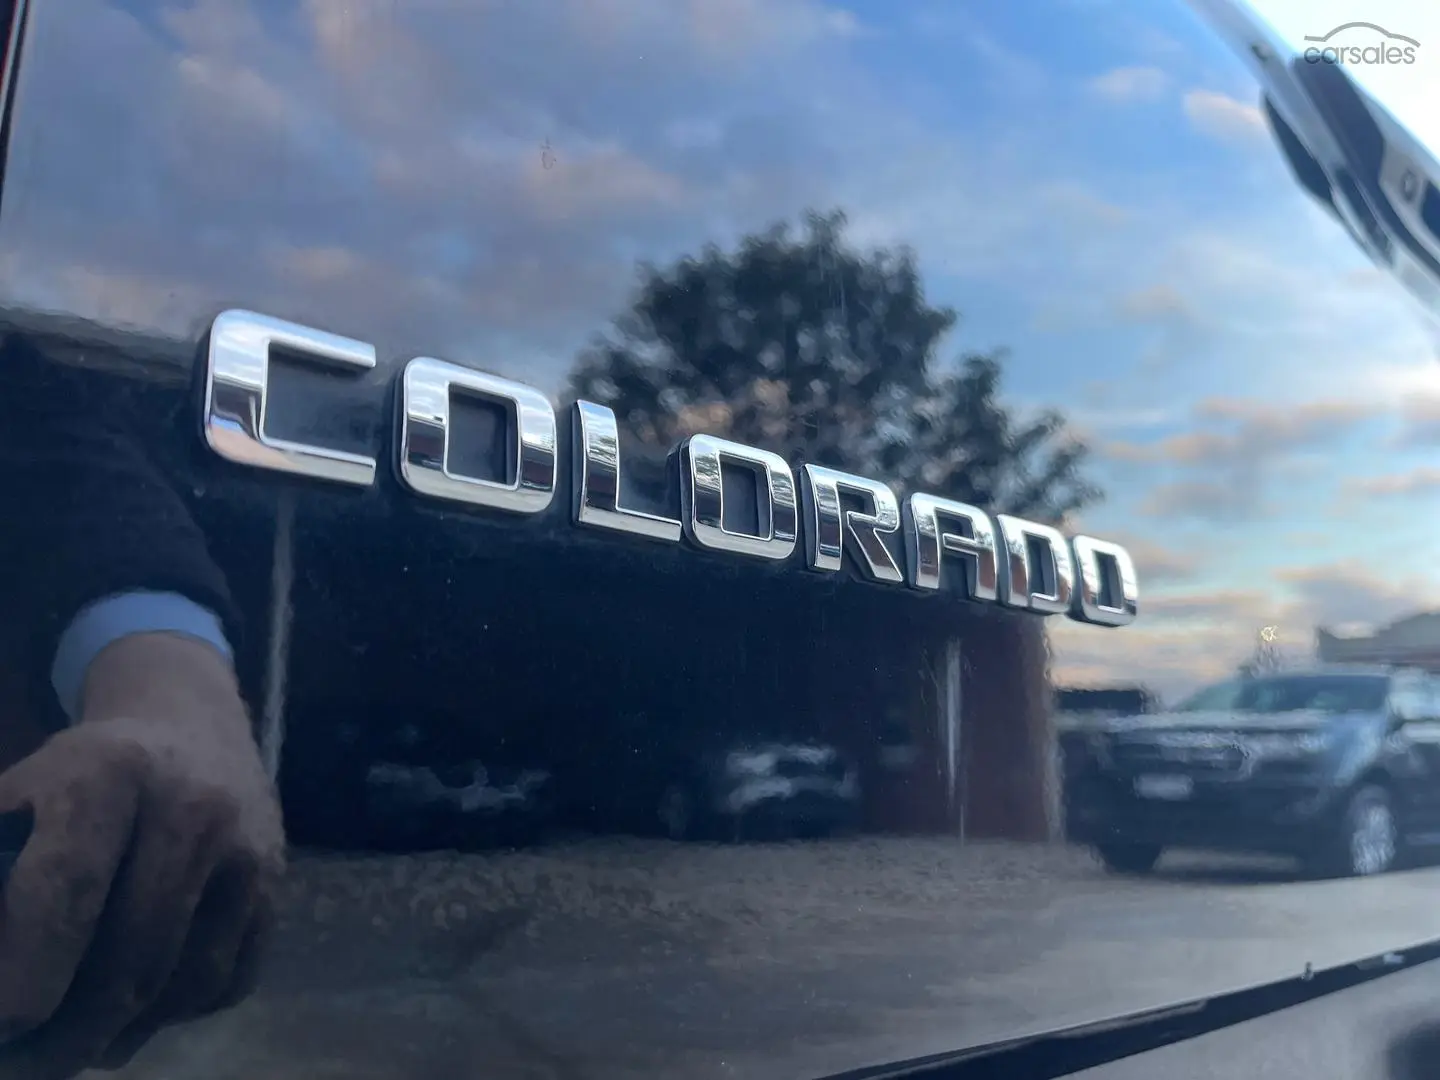 2019 Holden Colorado Image 31